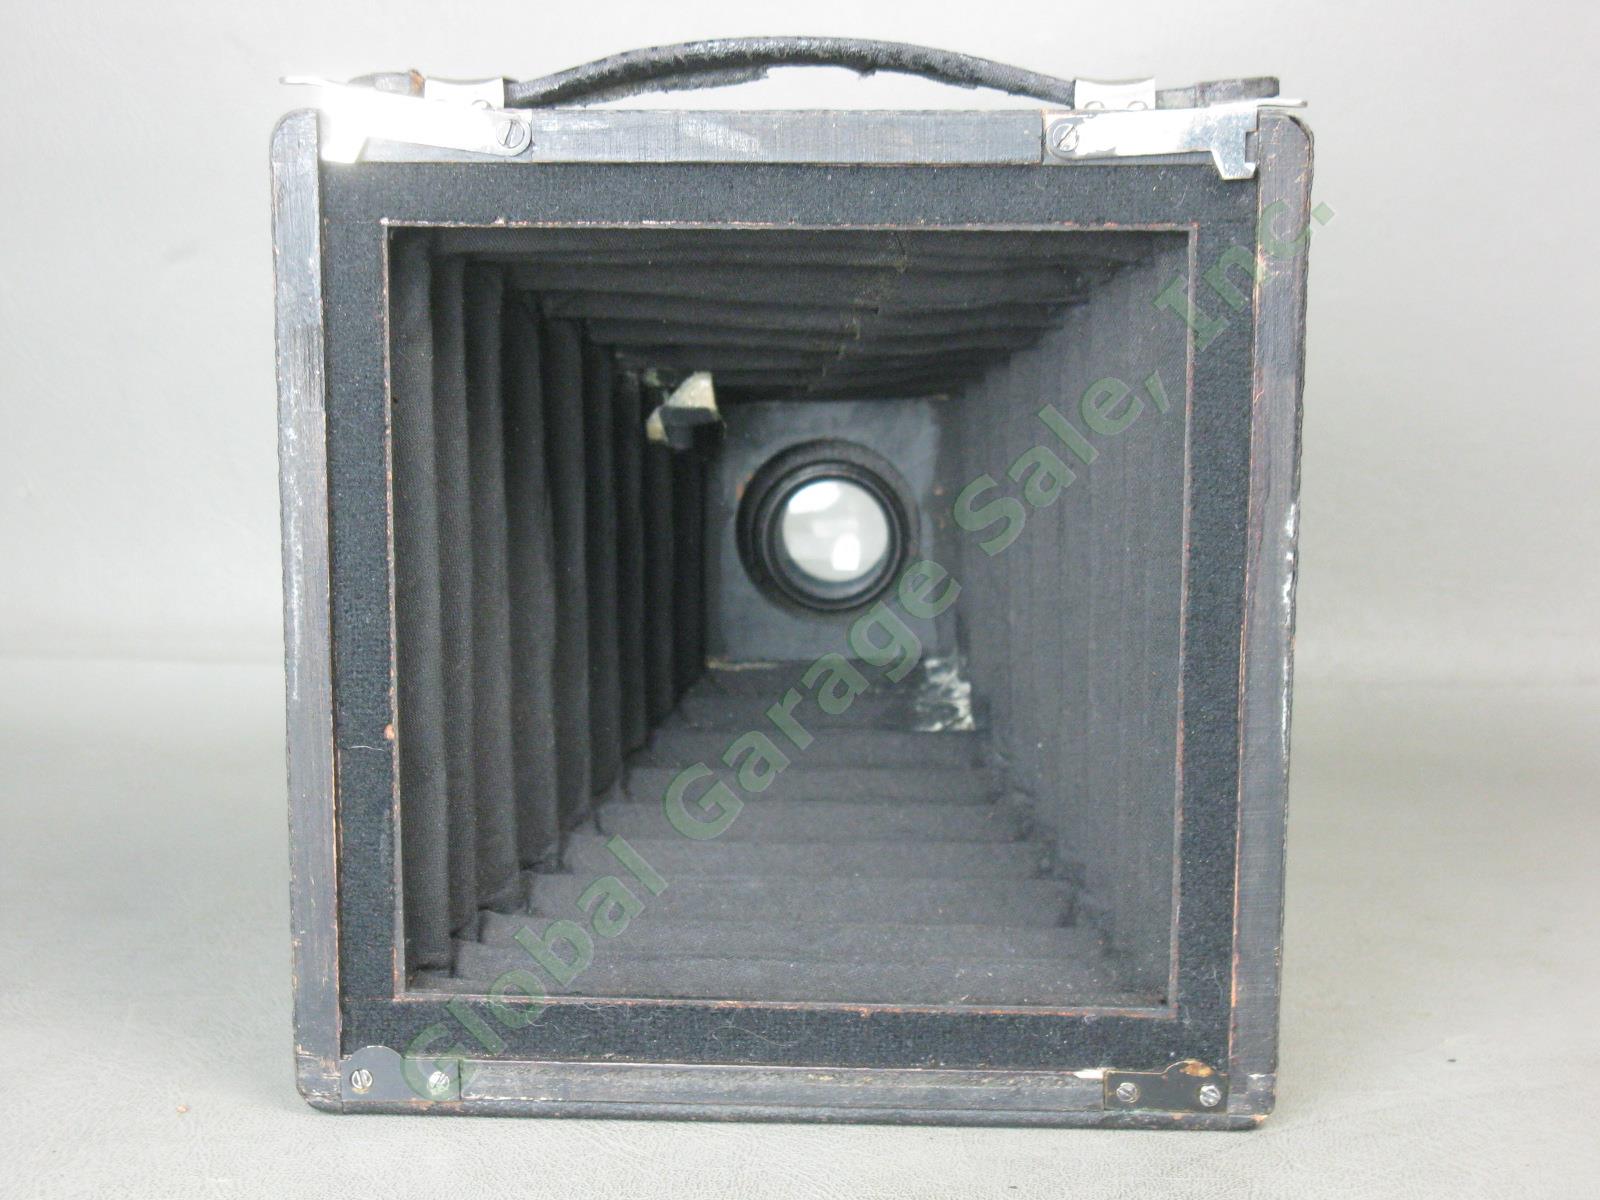 Antique Gundlach 4x5 Folding Camera Wollensack Betax No 2 f/6.3 Series IV Lens 11